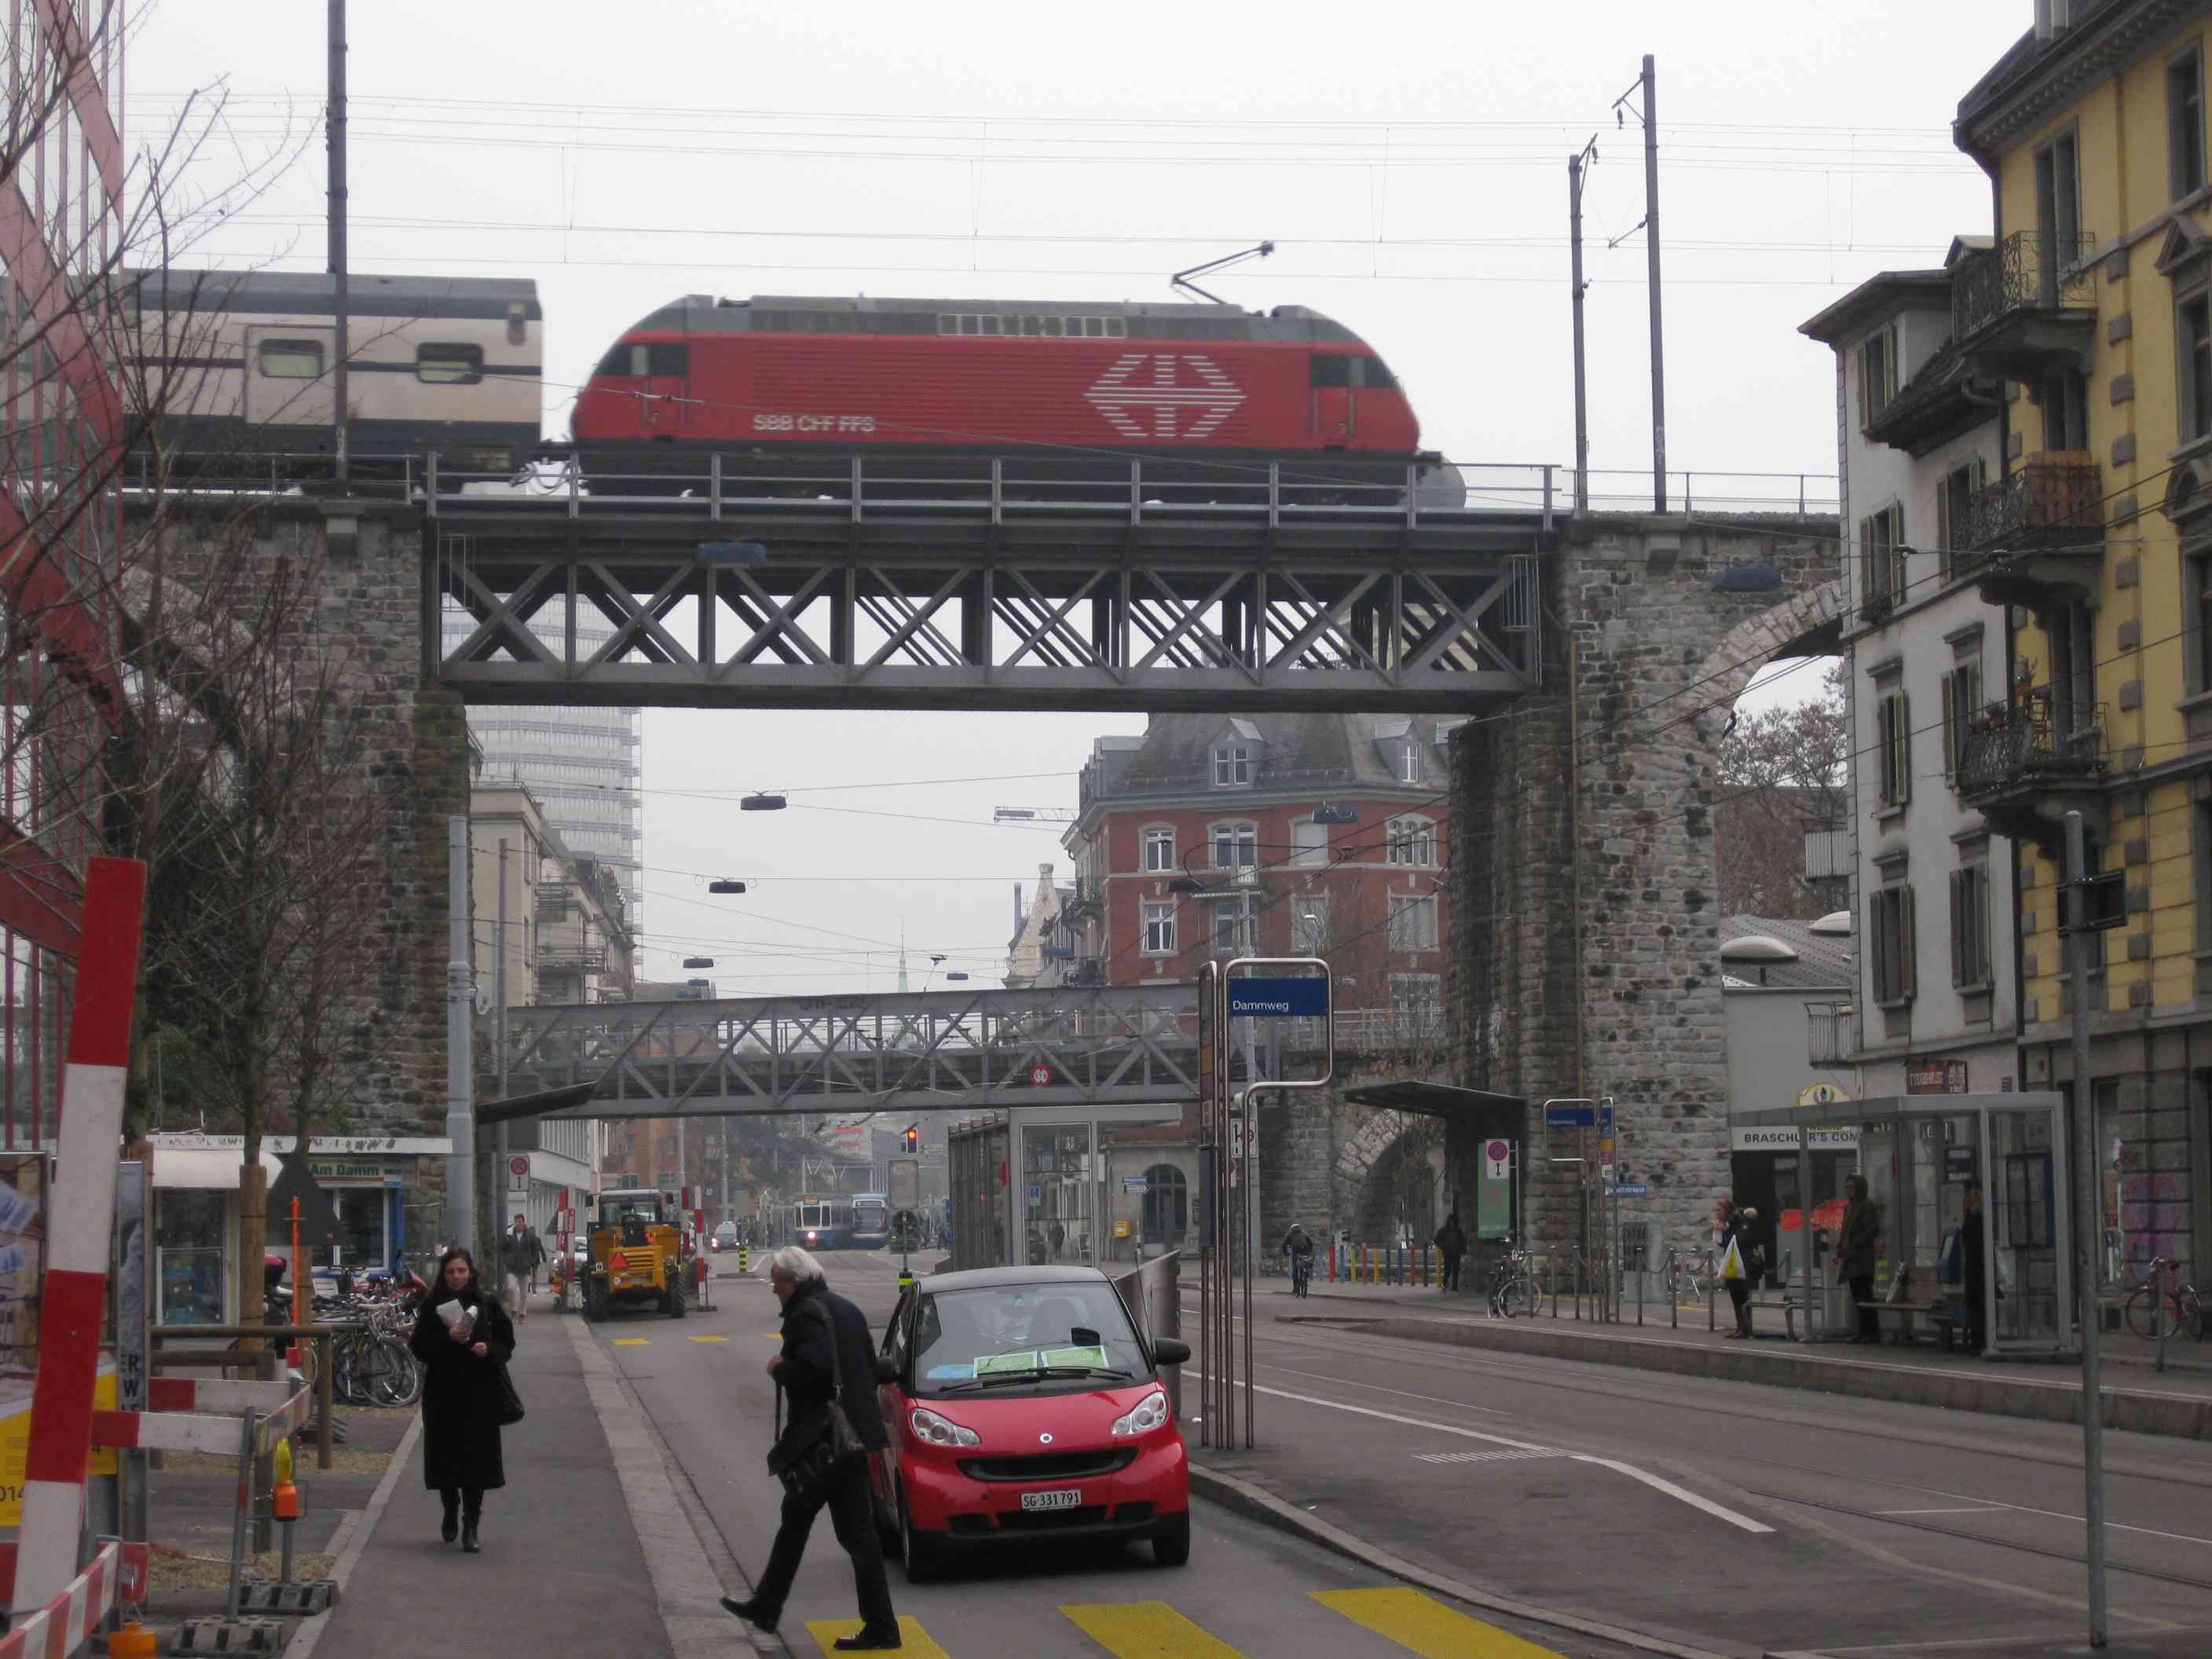 SBB-Lokomotive in Zürich